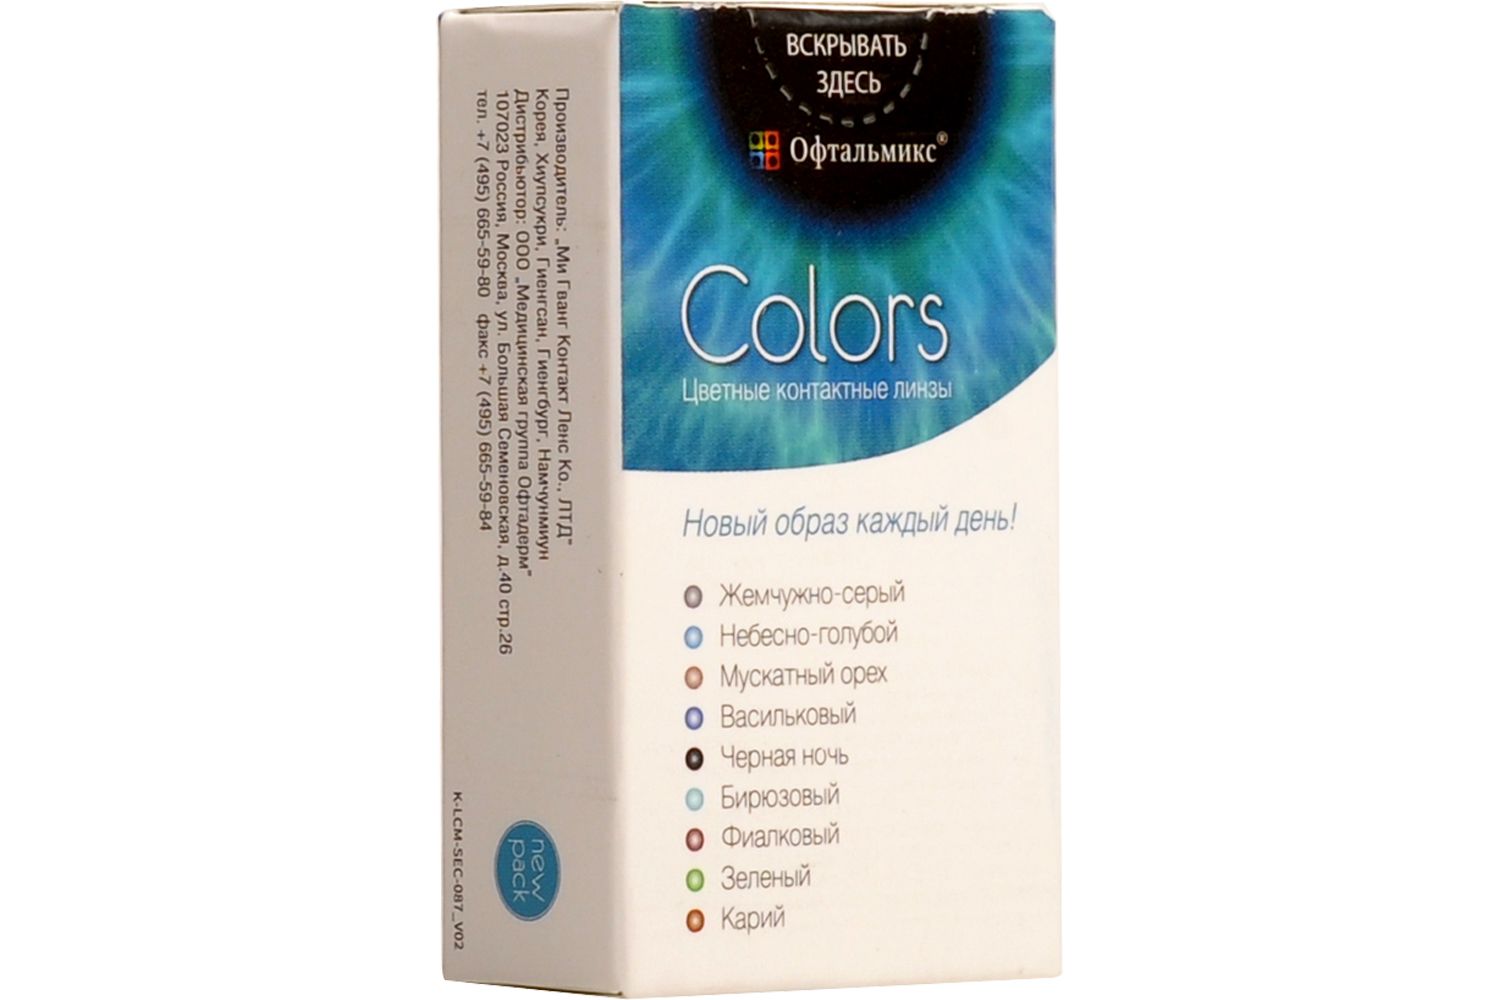 Купить Colors 2 линзы, Цветные контактные линзы Офтальмикс Colors, 2 шт. PWR -3, 00, R 8.6, Olive